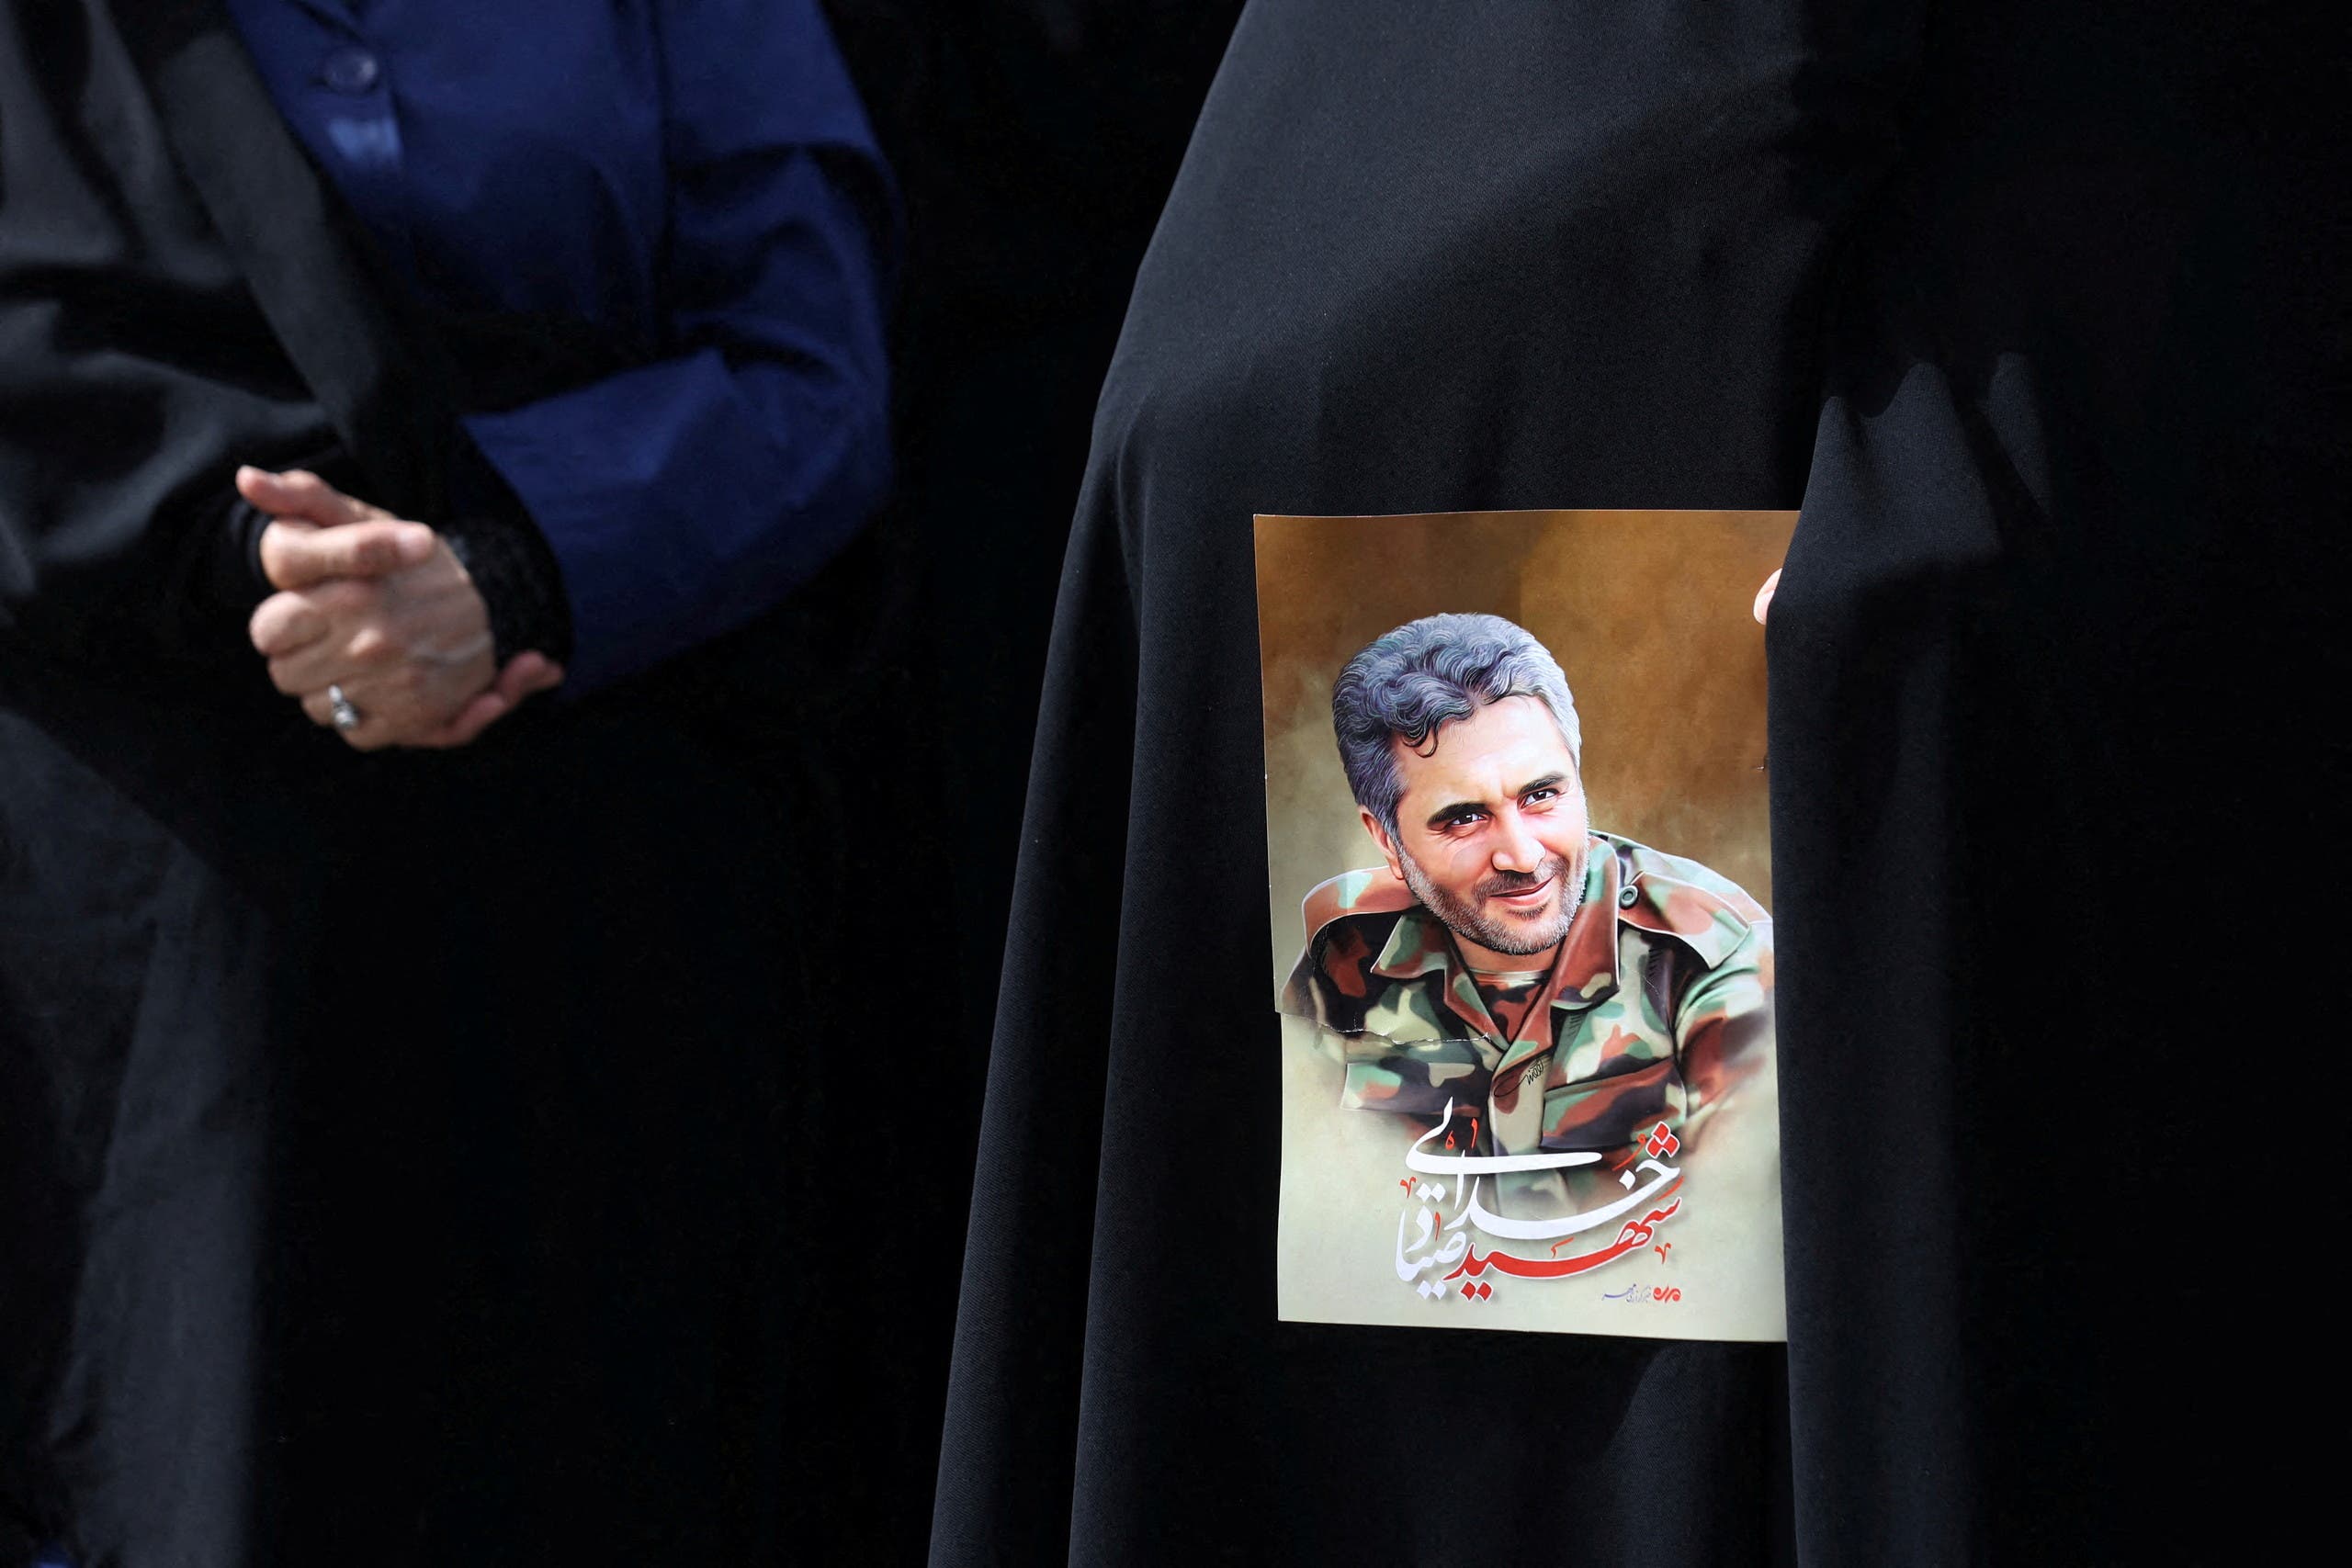 صورة عقيد الحرس الثوري الذي اغتيل في طهران صياد خدائي في العاصمة الإيرانية - رويترز